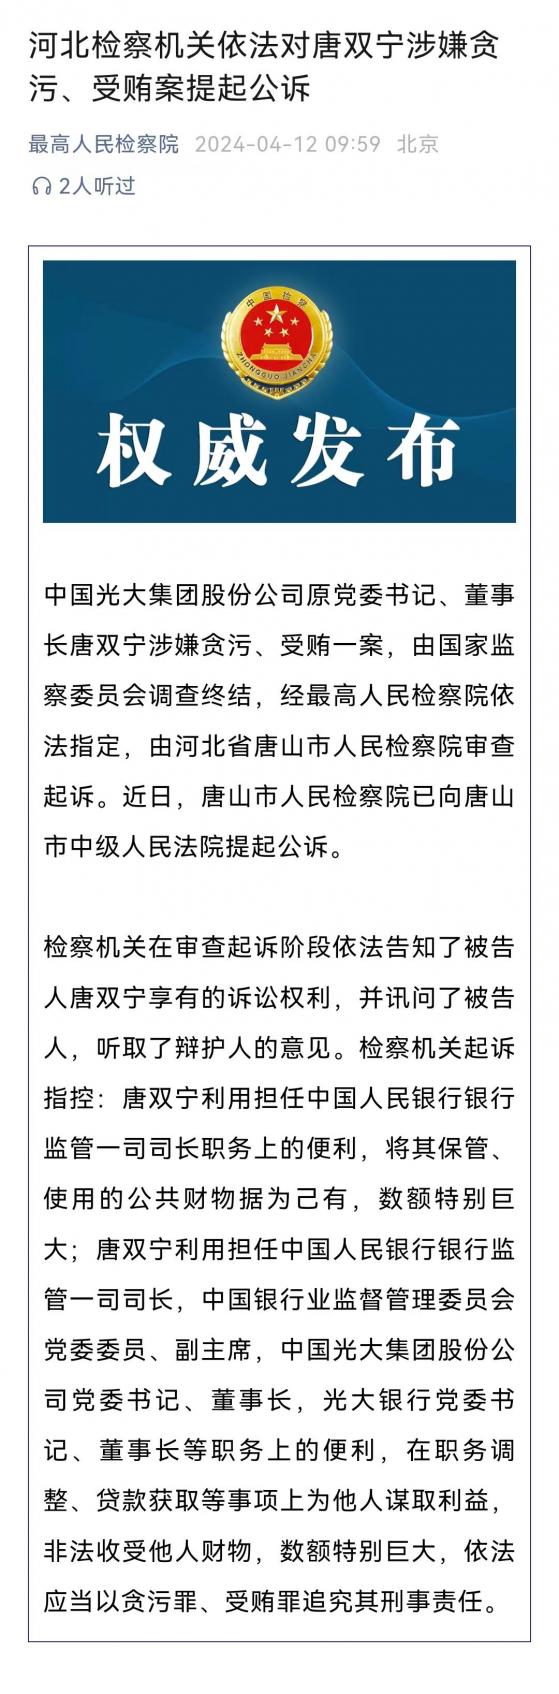 原光大集团董事长唐双宁因贪污受贿被提起公诉，近年来已有多名全国性银行董事长、行长被查